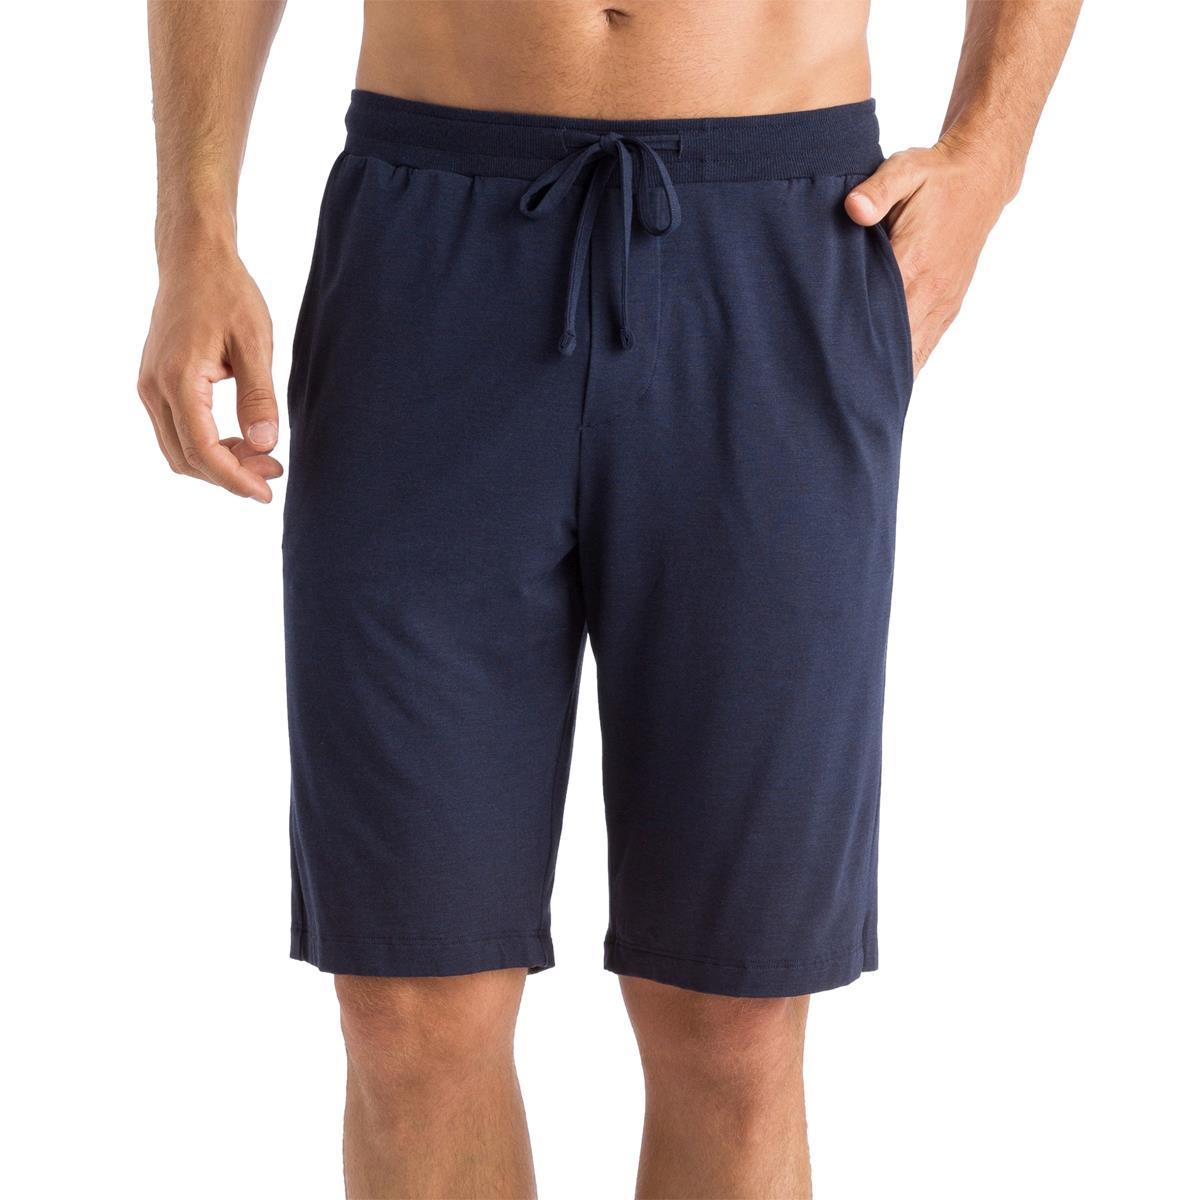 Casuals Short Pants - Men's